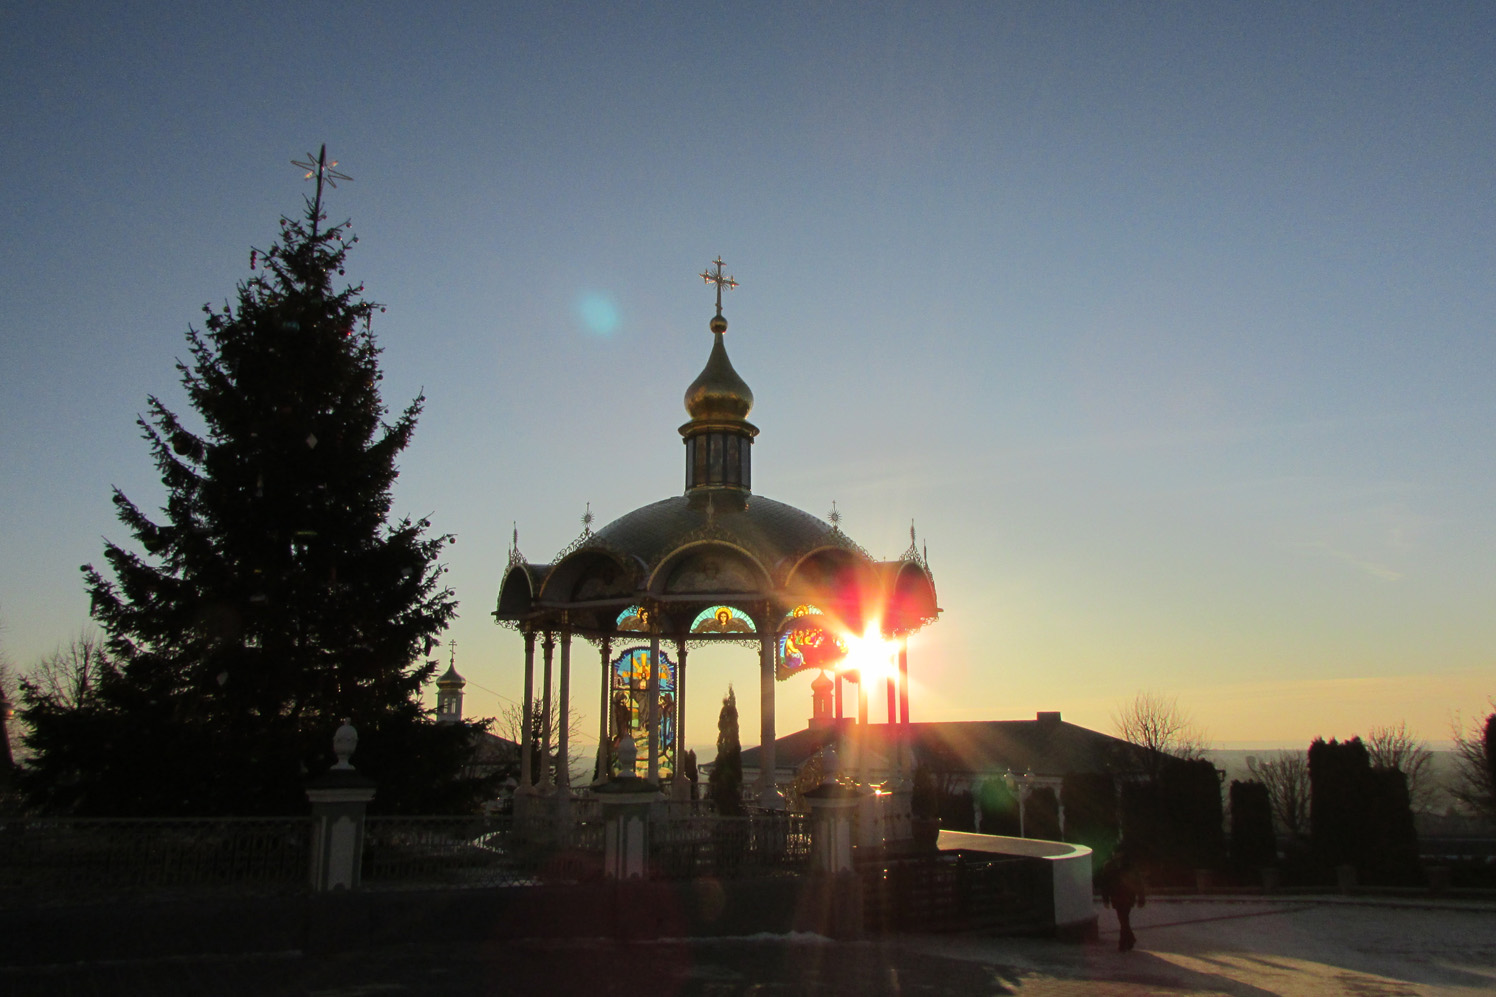 Добавлен фоторепортаж из паломнической поездки в Свято-Успенскую Почаевскую лавру